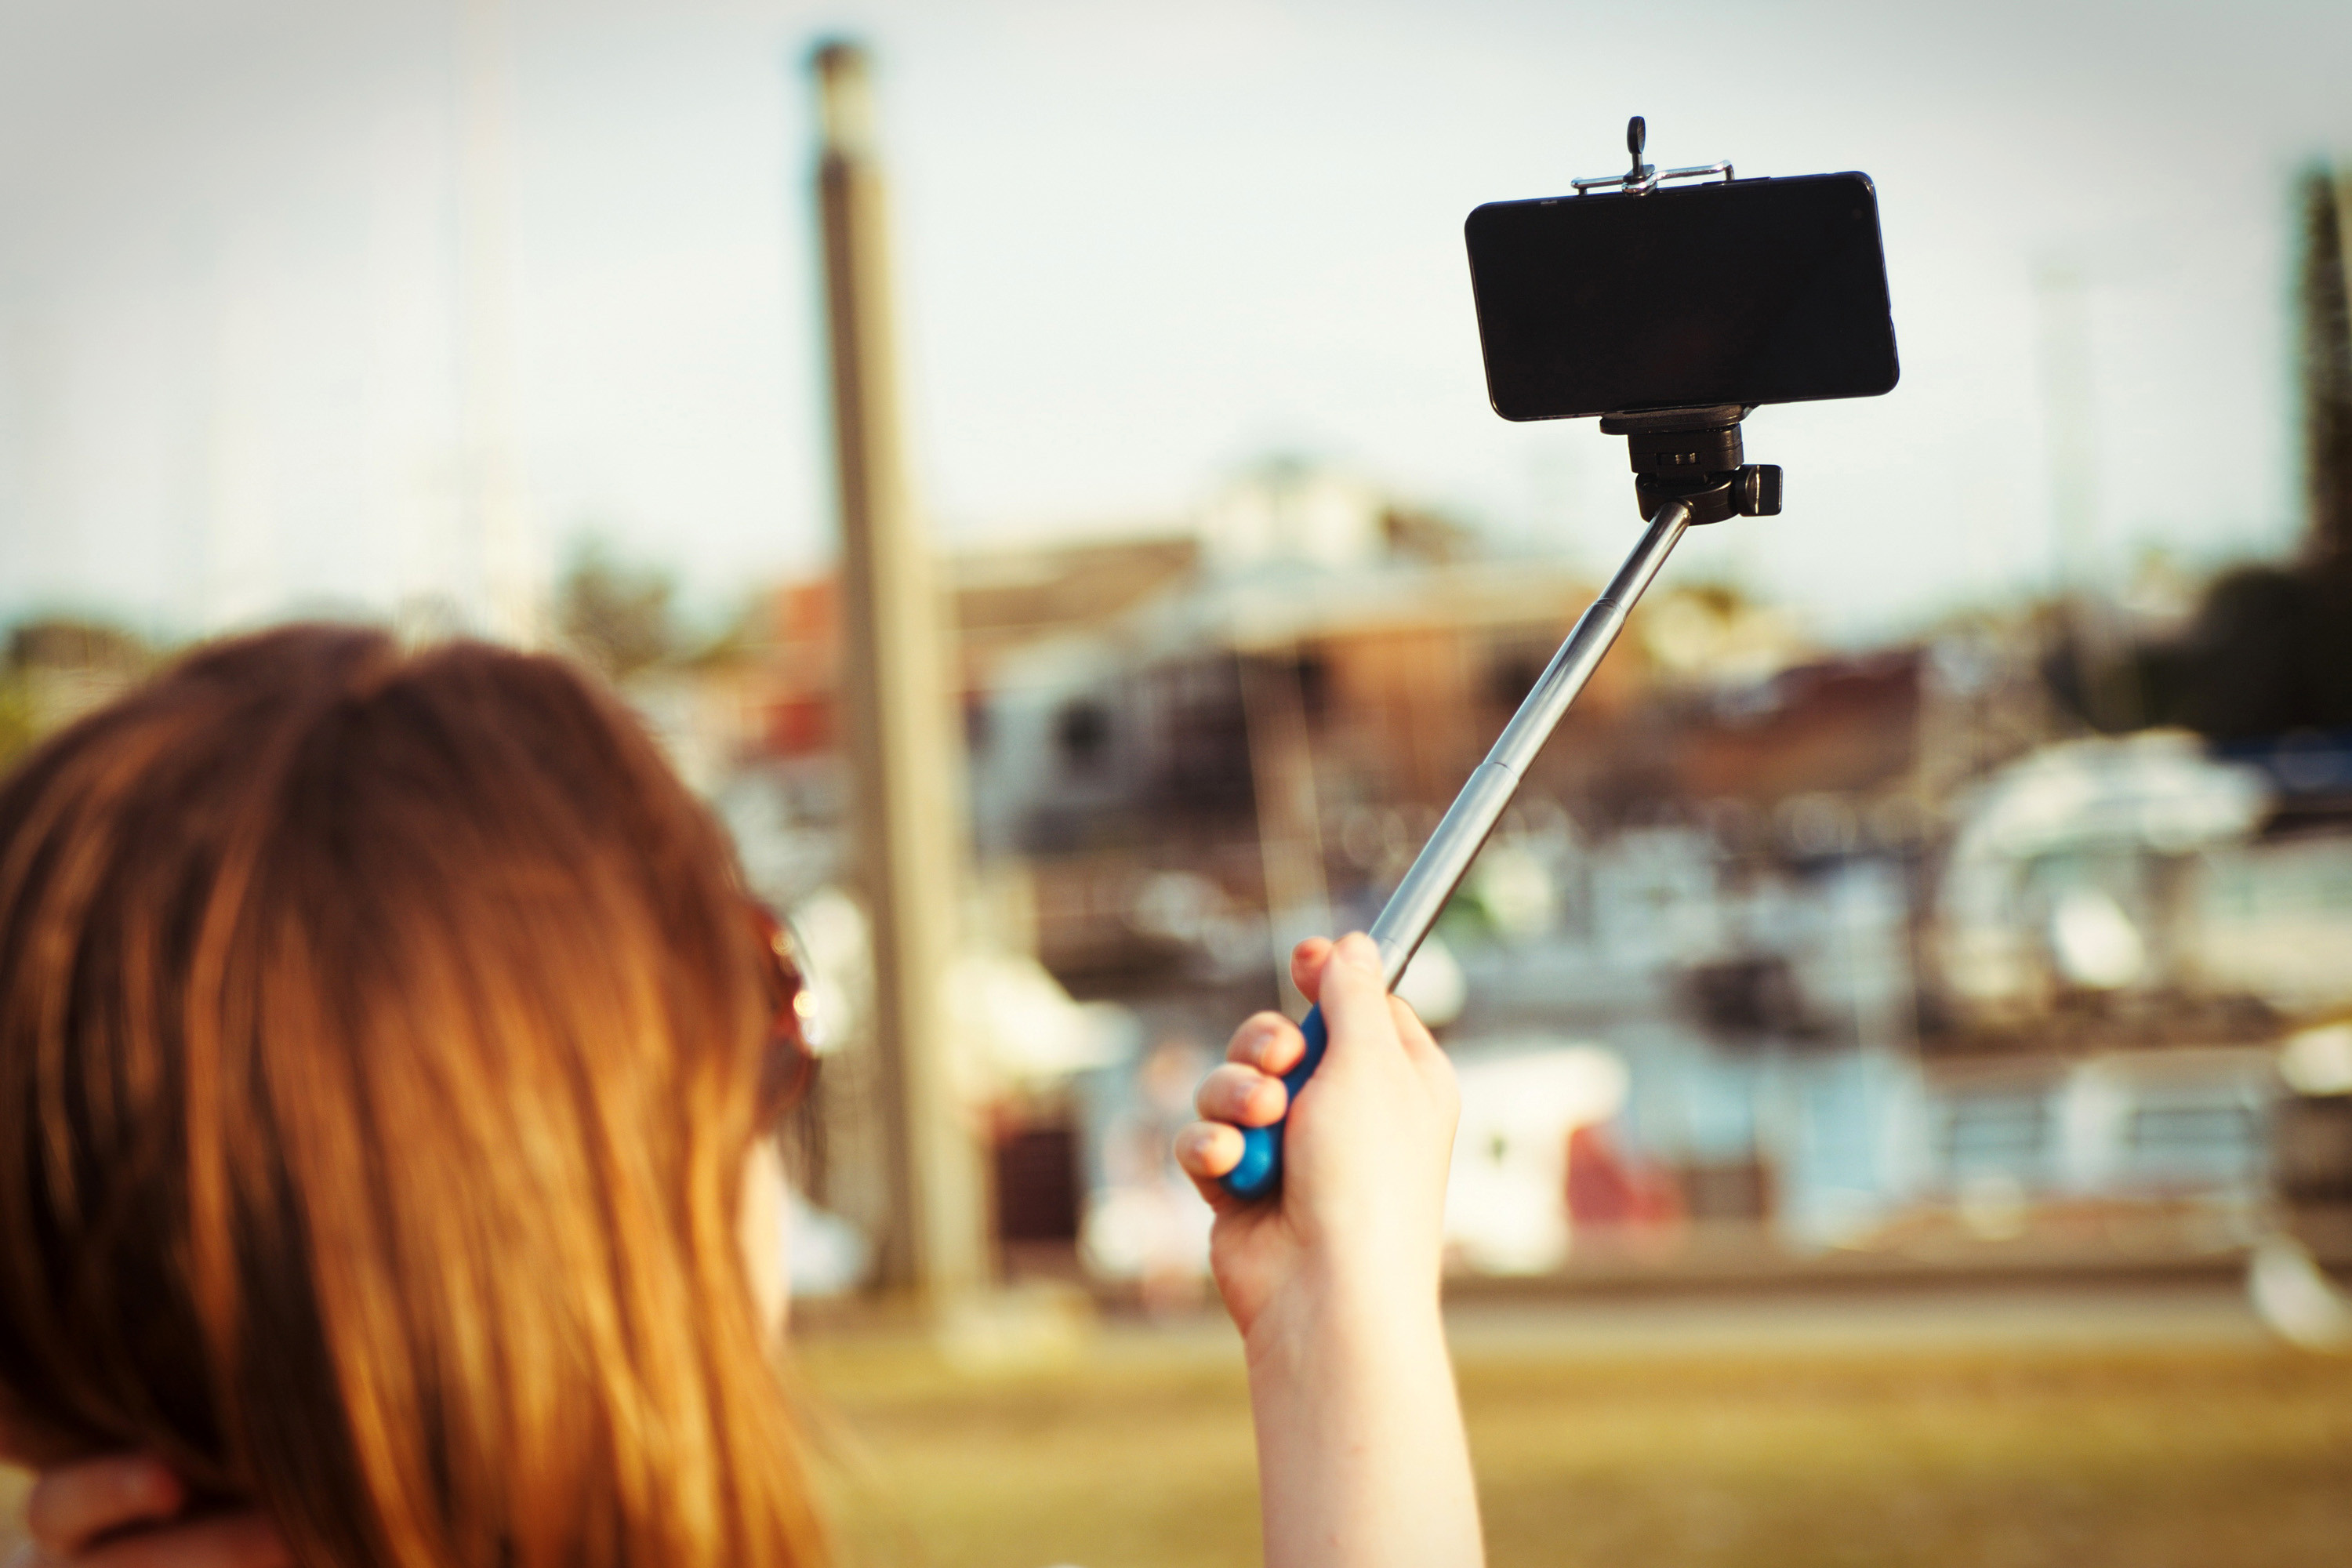 More information about "Ελληνες ερευνητές ανέπτυξαν εφαρμογή τεχνητής νοημοσύνης για 3D selfies"